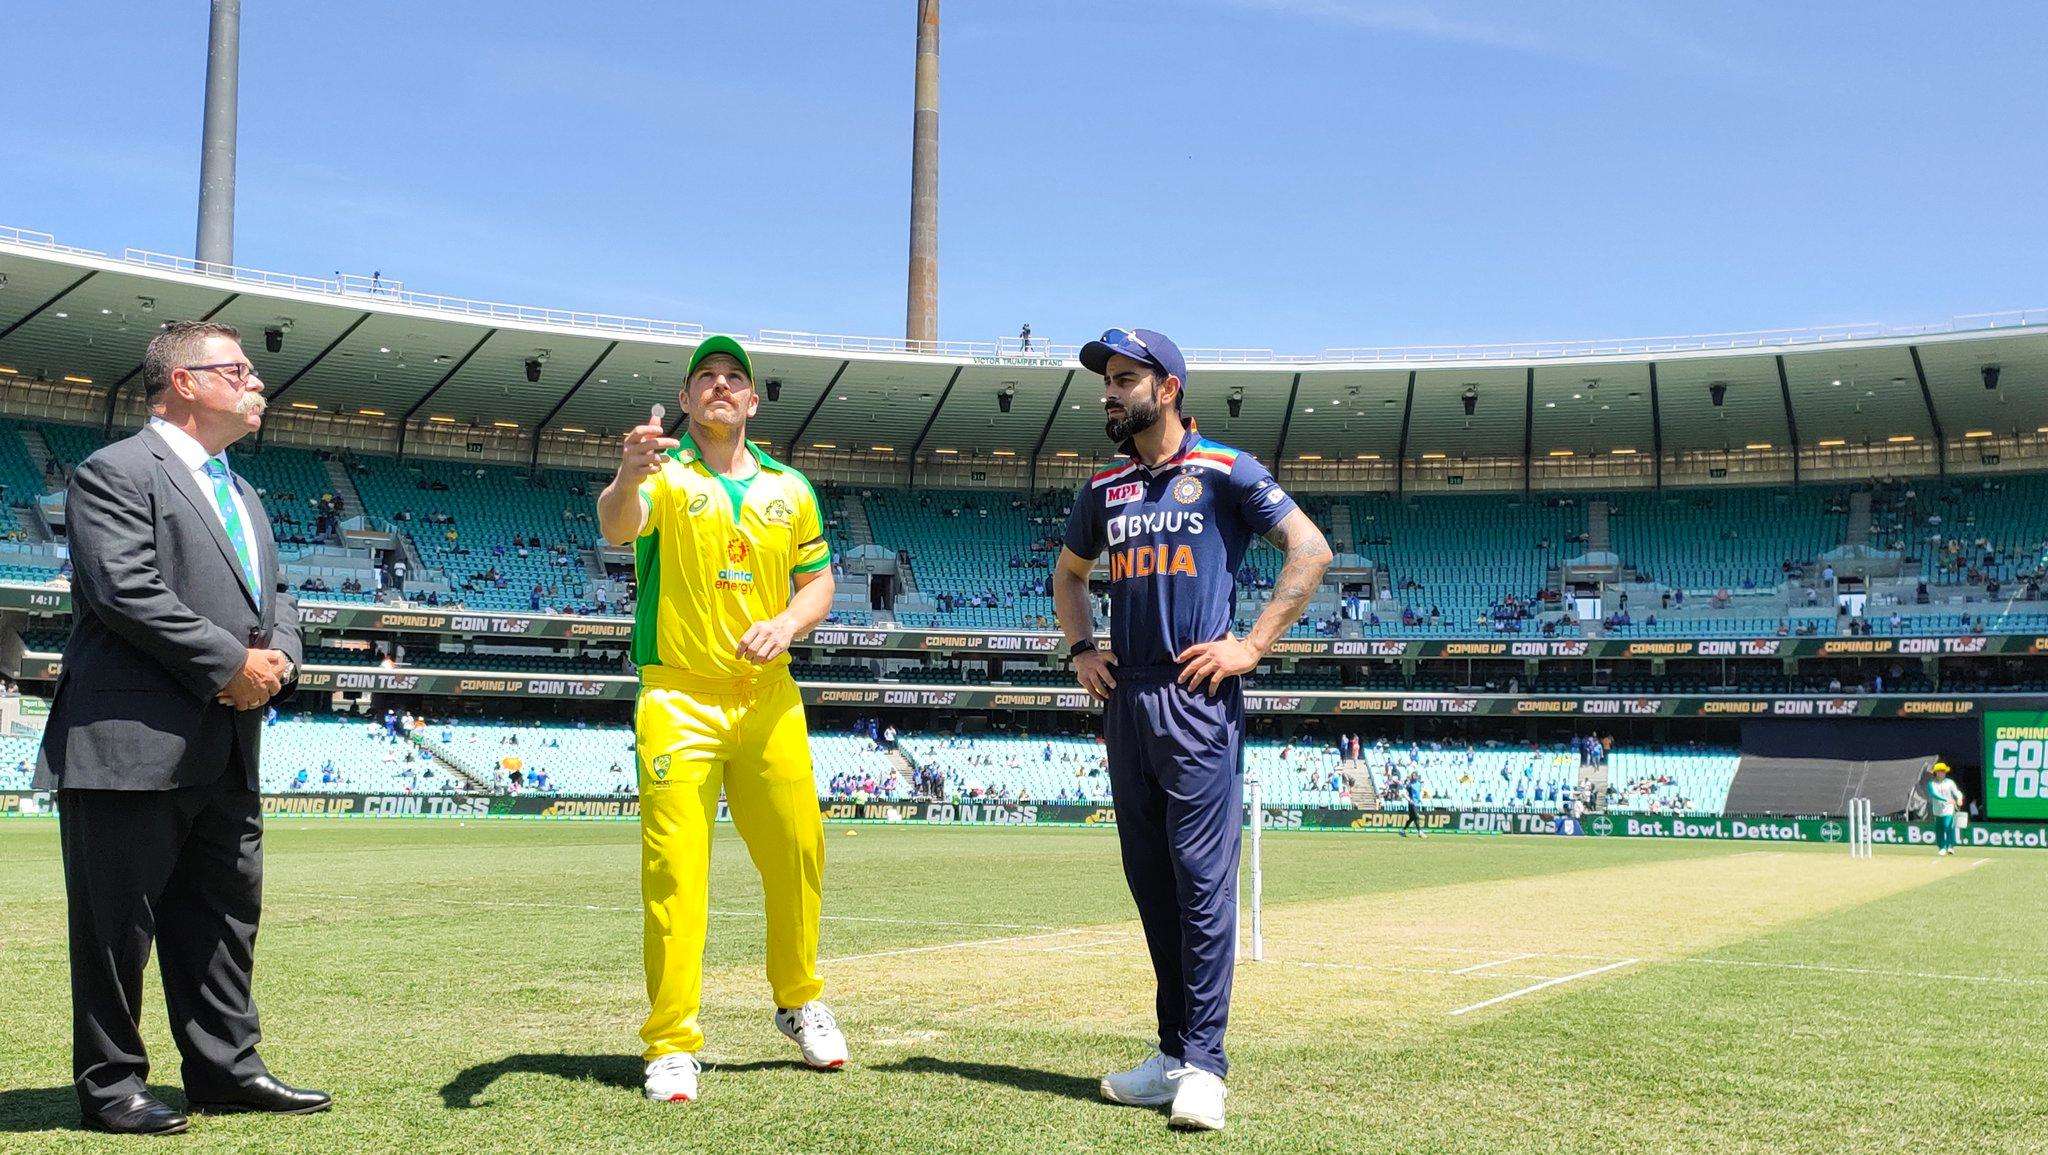 Aus vs Ind ,3rd ODI Live Streaming Online: जानिए ऑनलाइन कब और कैसे देख सकते हैं भारत- ऑस्ट्रेलिया के तीसरे वनडे को